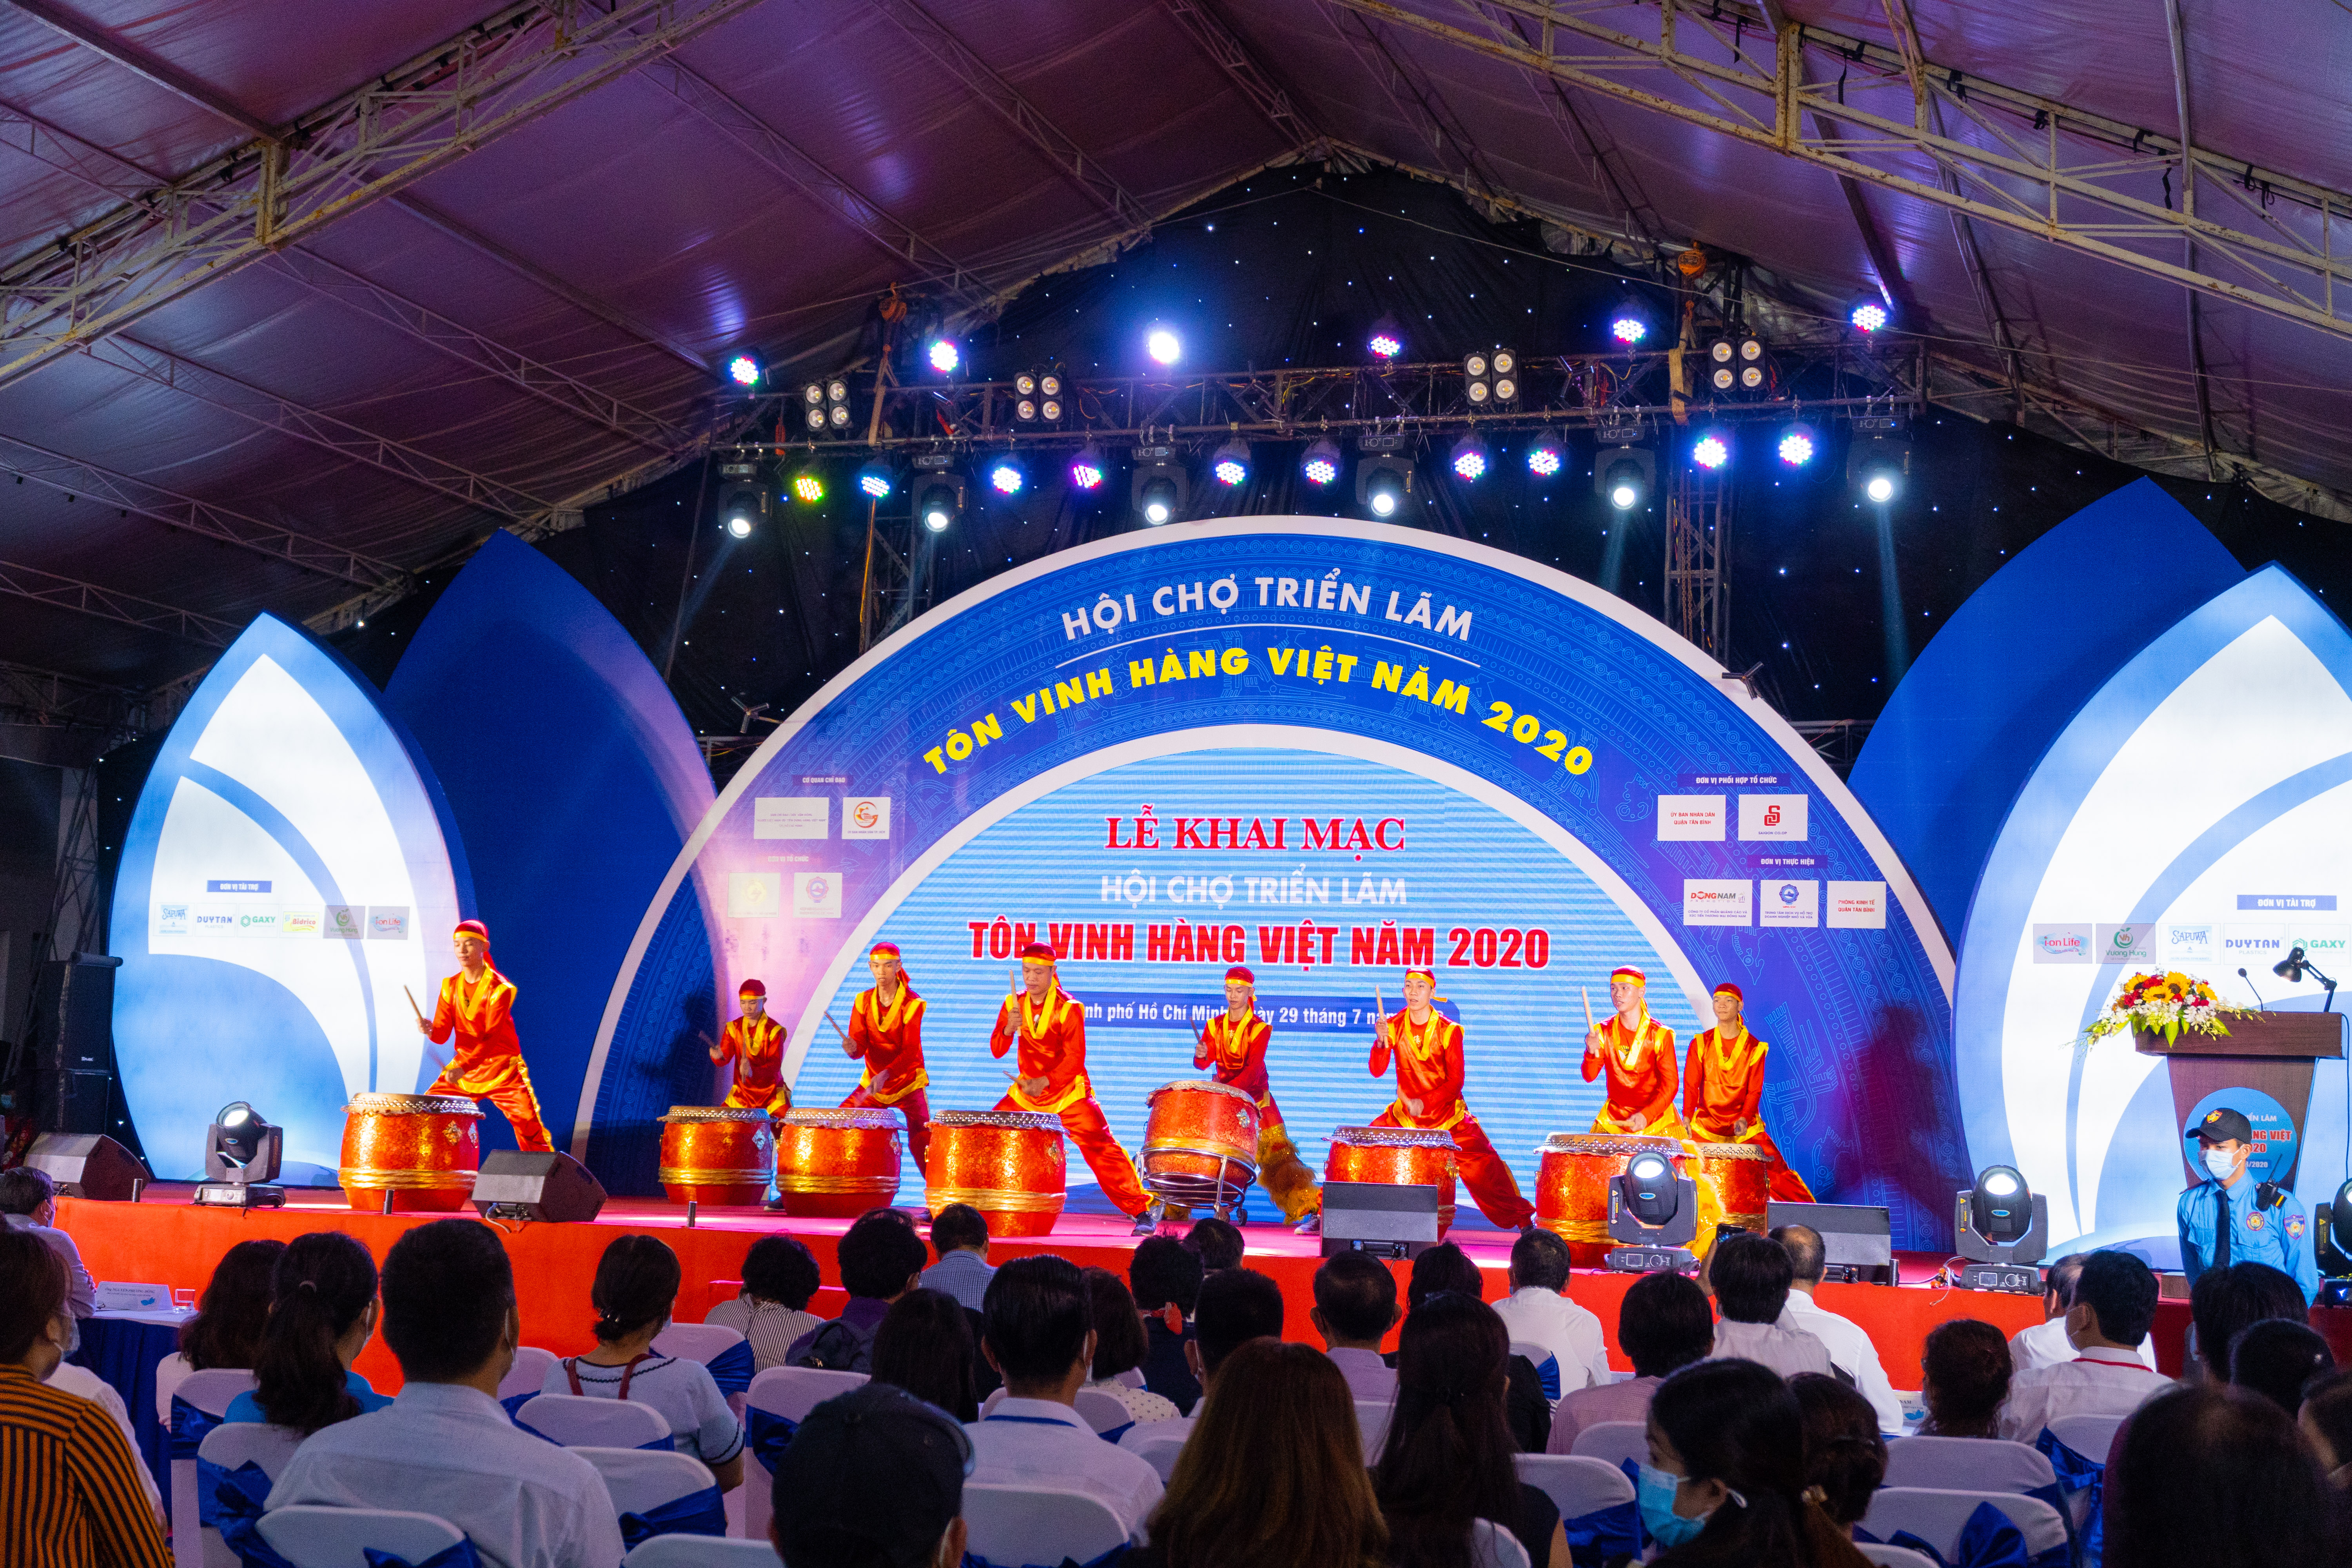 Sao Bắc Đẩu tham dự hội chợ triển lãm “Tôn vinh hàng Việt Nam – 2020”